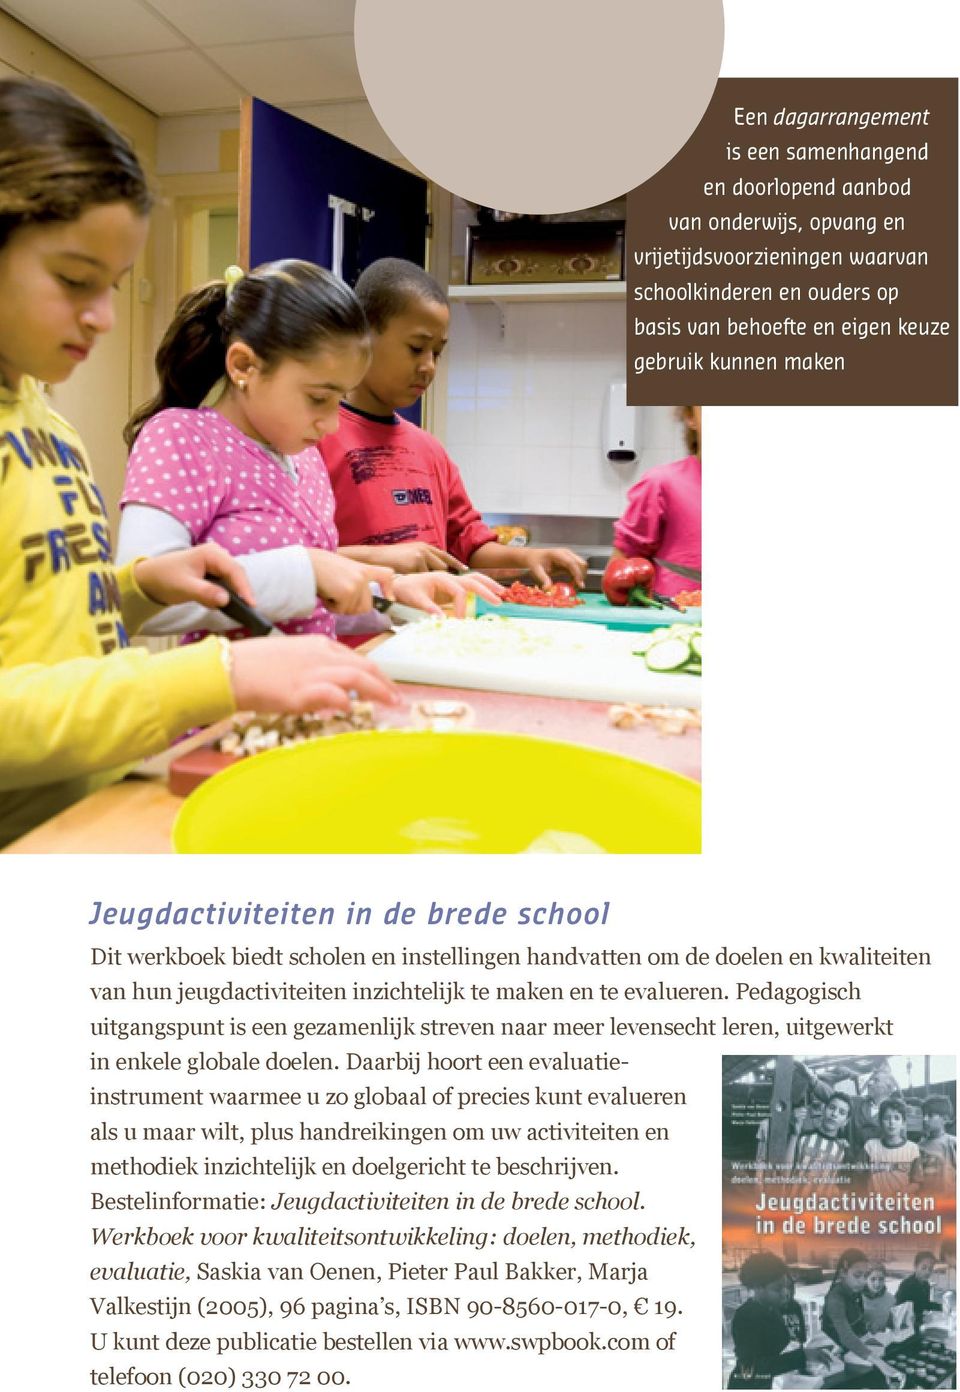 Pedagogisch uitgangspunt is een gezamenlijk streven naar meer levensecht leren, uitgewerkt in enkele globale doelen.